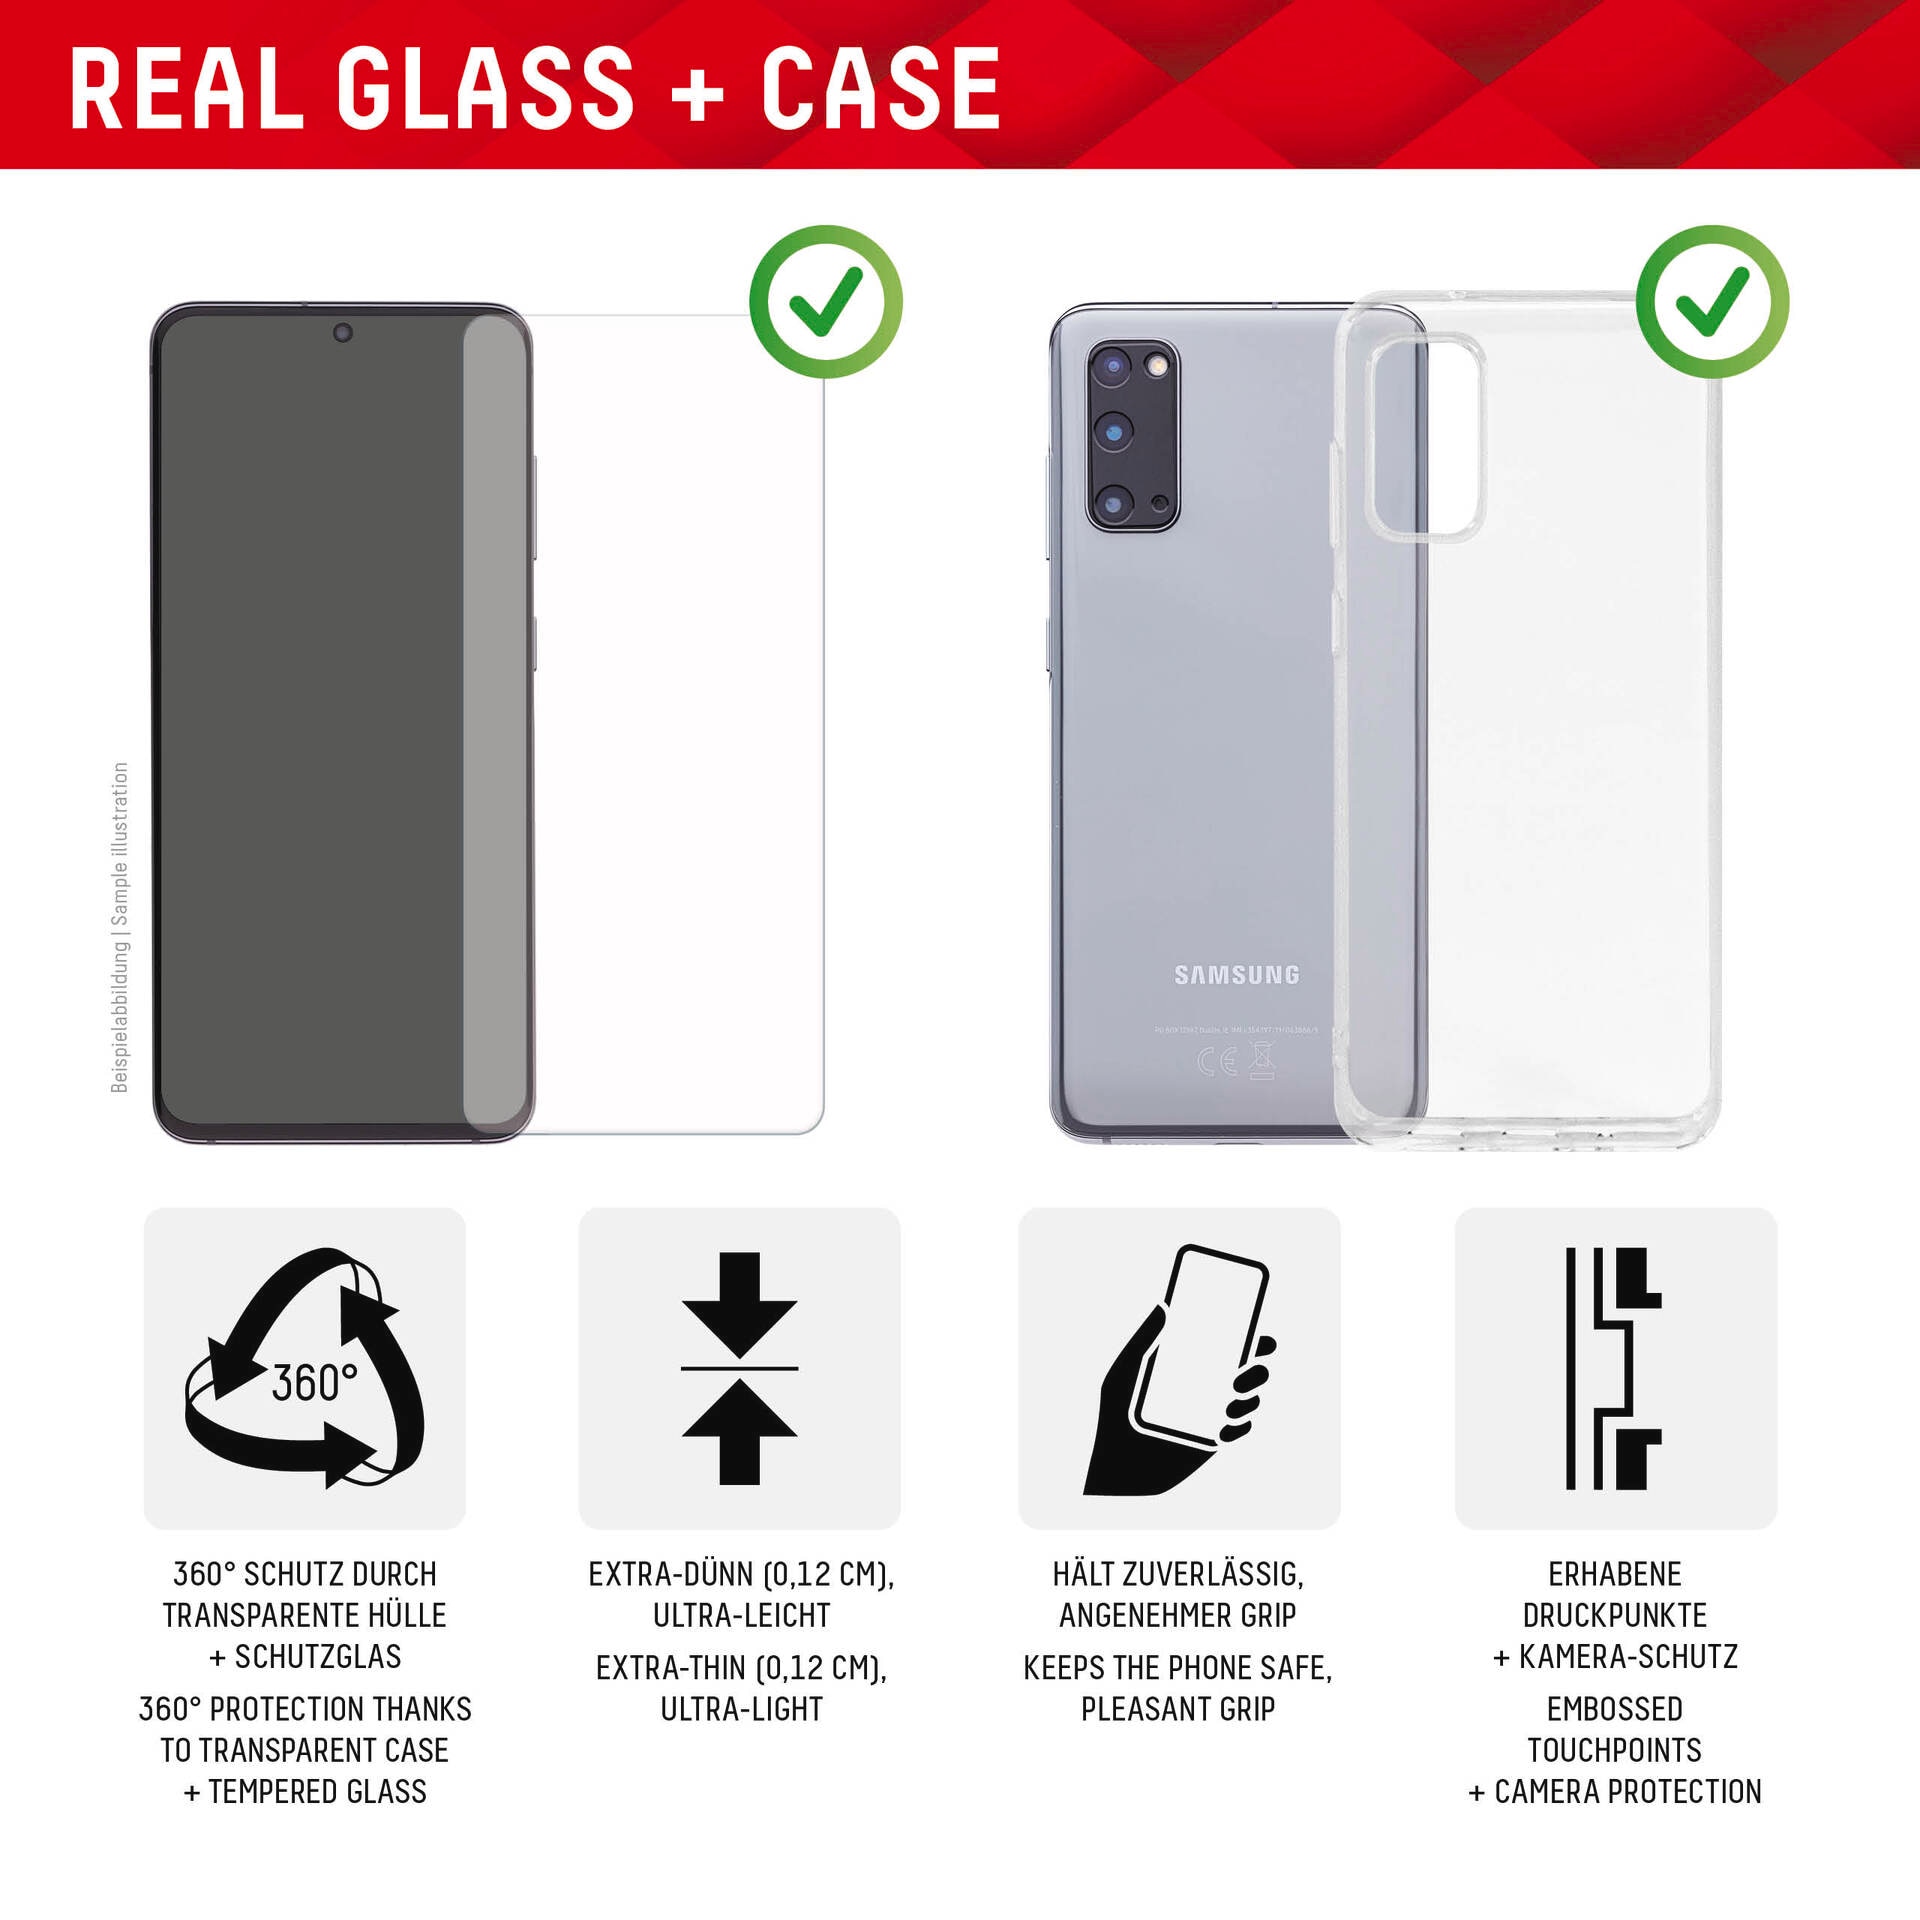 Displex Displayschutzglas »Real Glass + Case - Samsung Galaxy S23«, für Samsung Galaxy S23, Displayschutzfolie Displayschutz Rundumschutz 360 Grad splitterfest